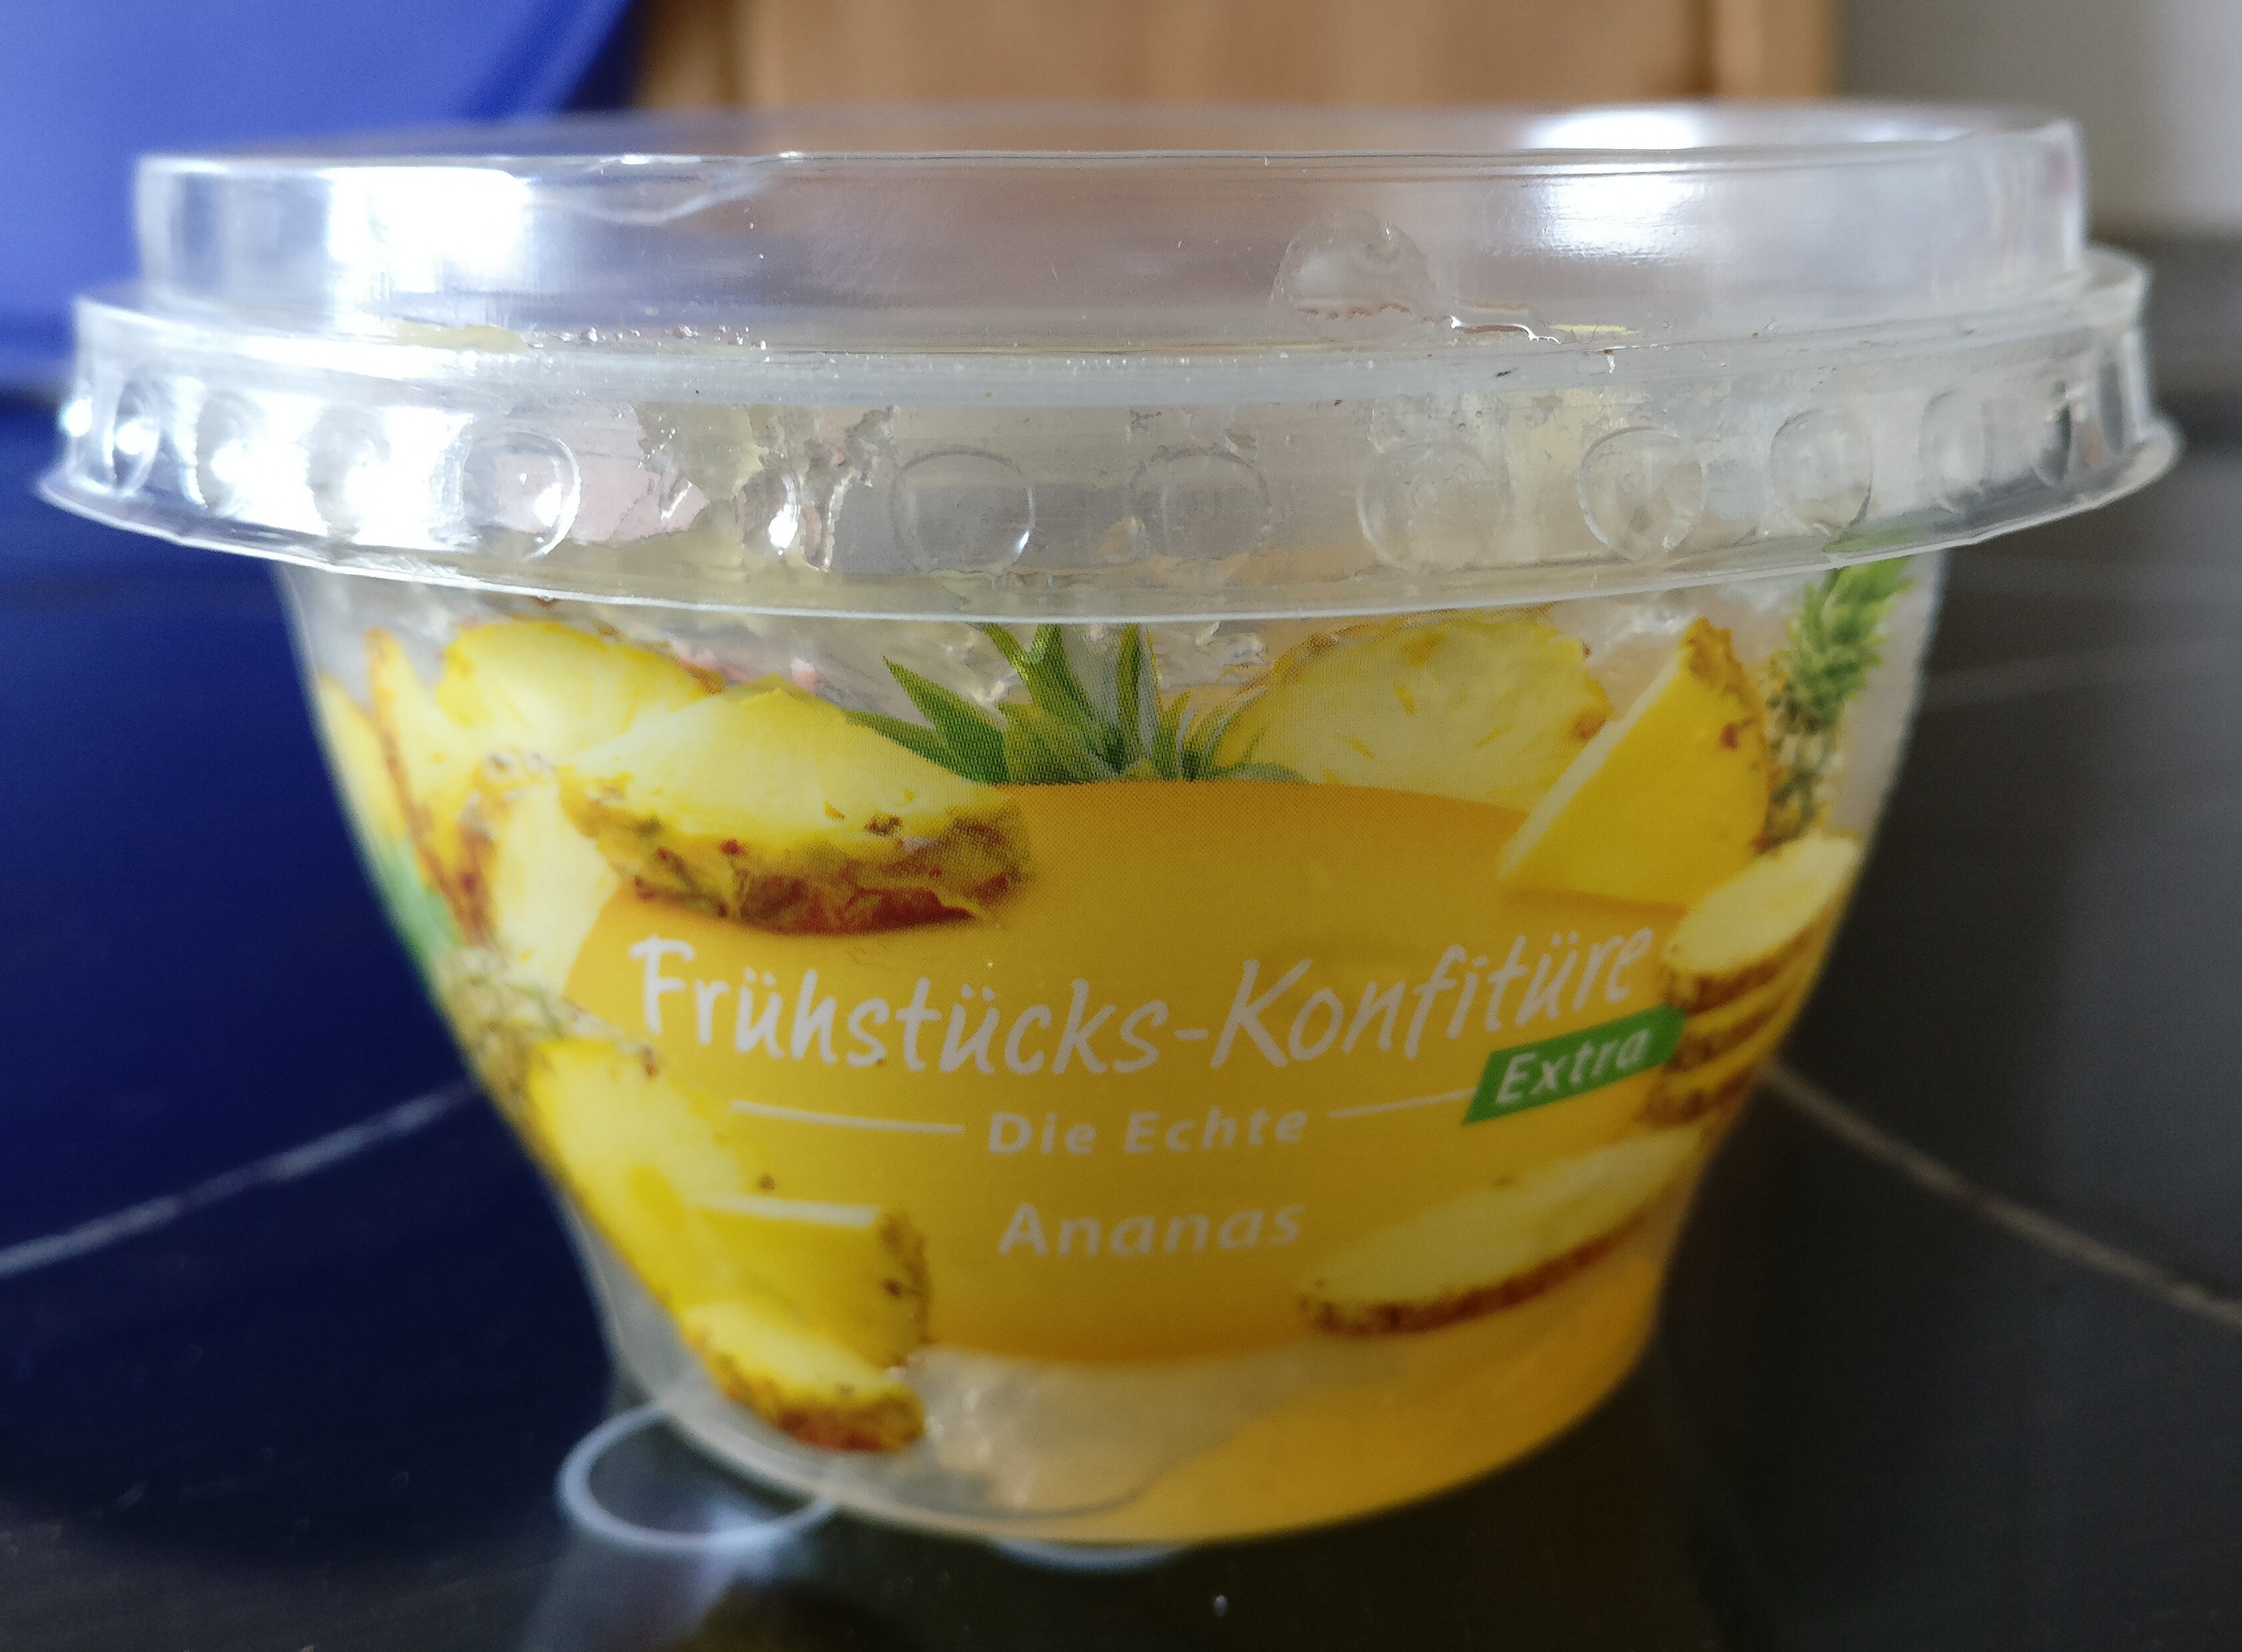 Frühstücks-Konfitüre Ananas - Product - de